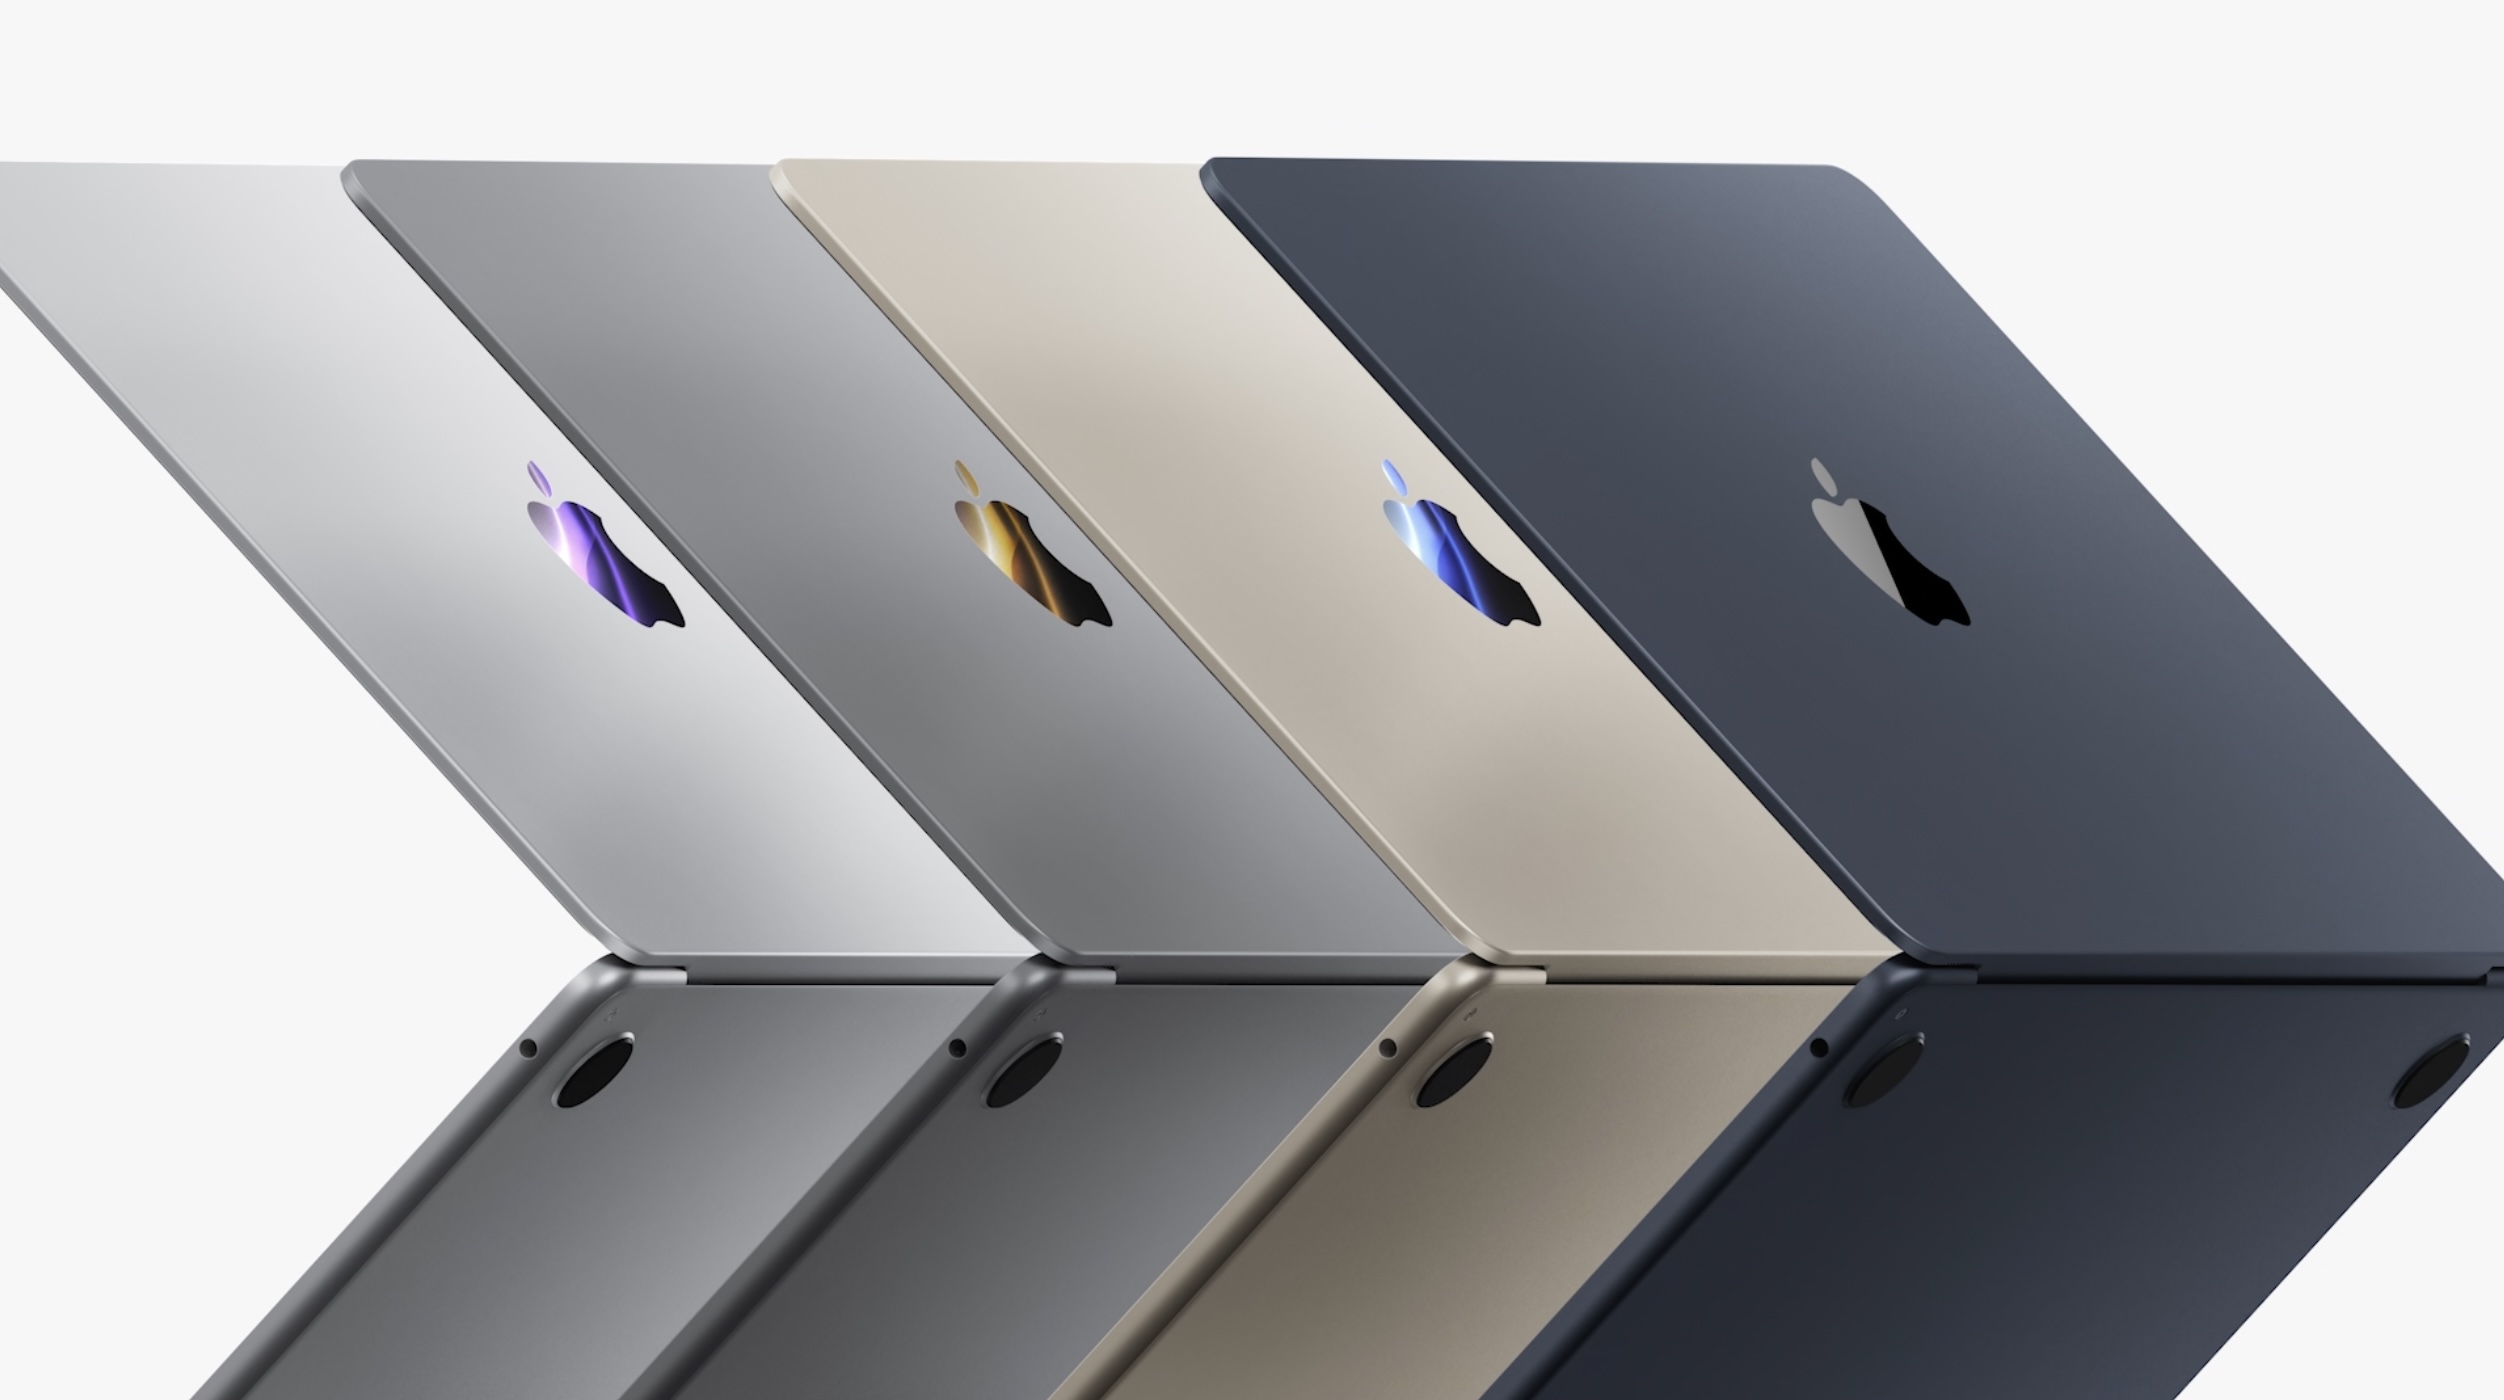 M2 MacBook Air, según información, aparecerá en las tiendas el 15 de julio : con pedidos anticipados con una semana de anticipación.